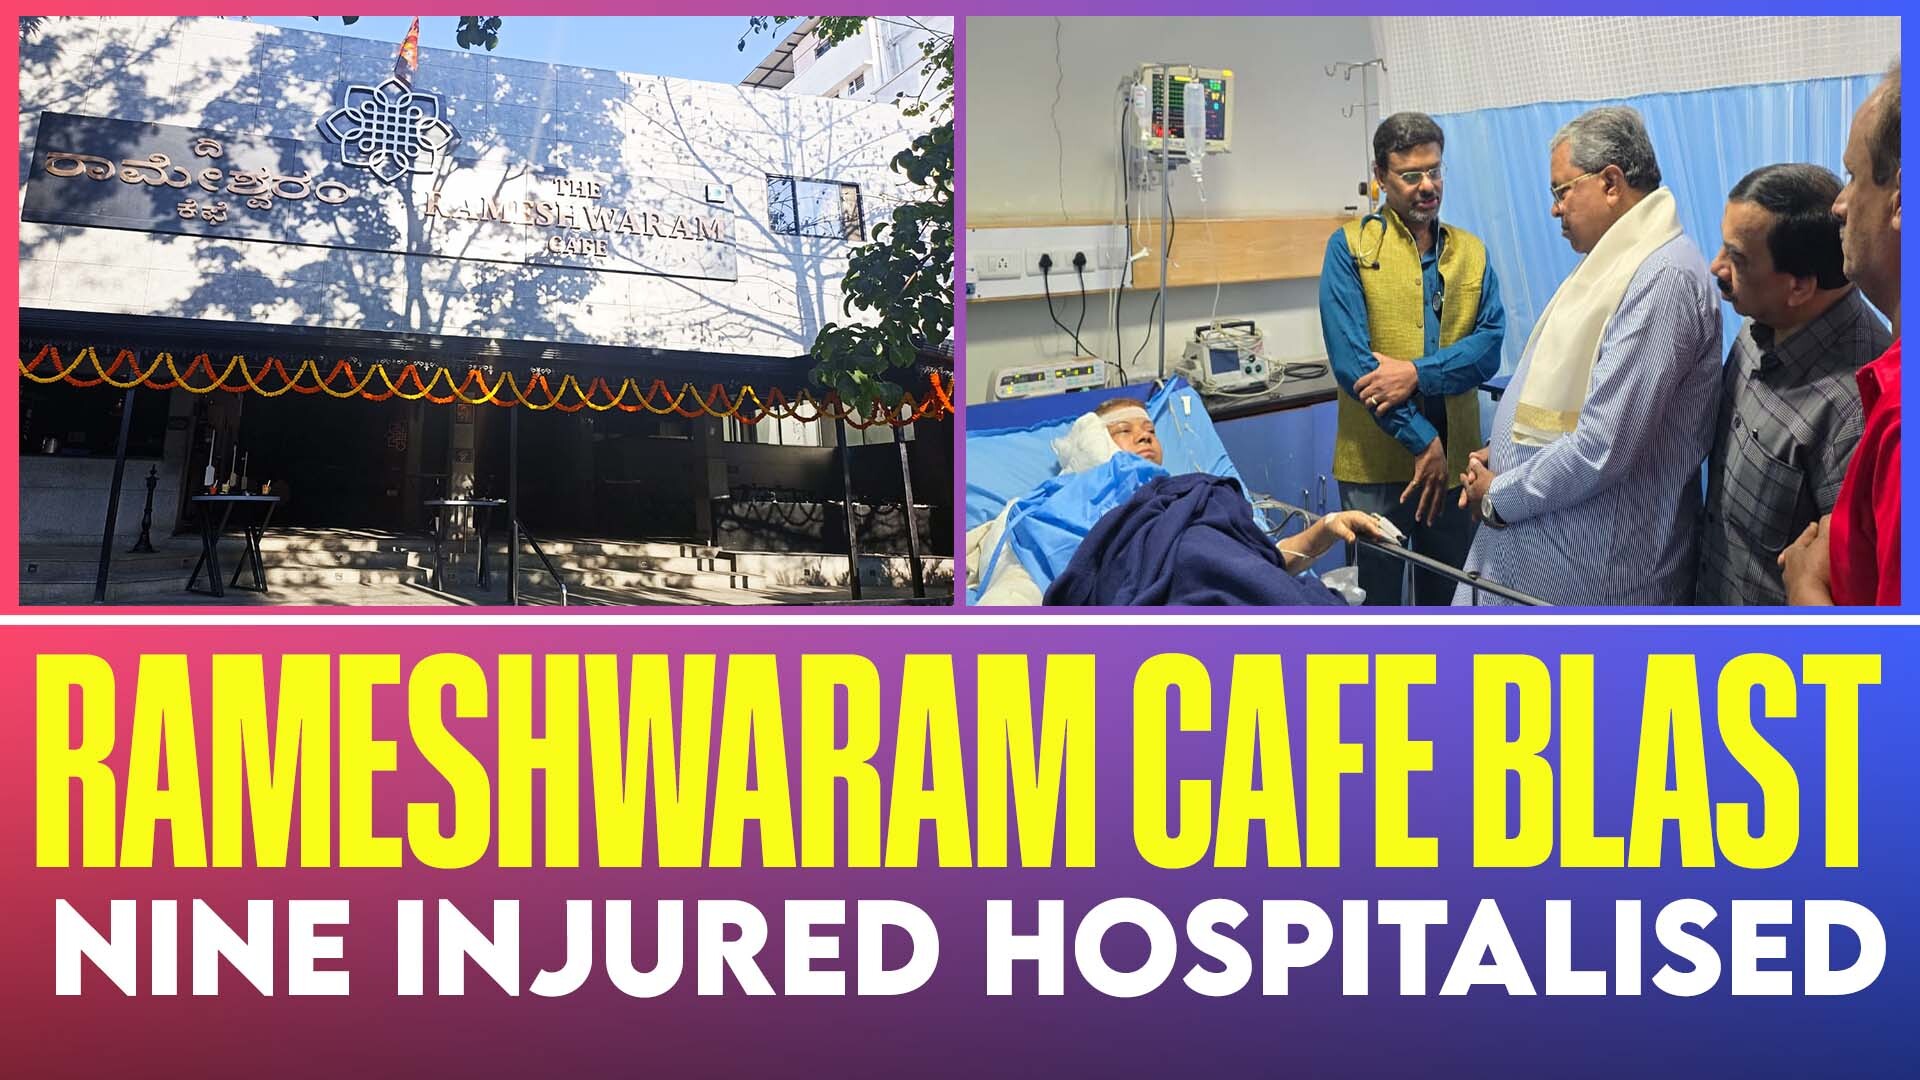 Rameshwaram Cafe blast injured